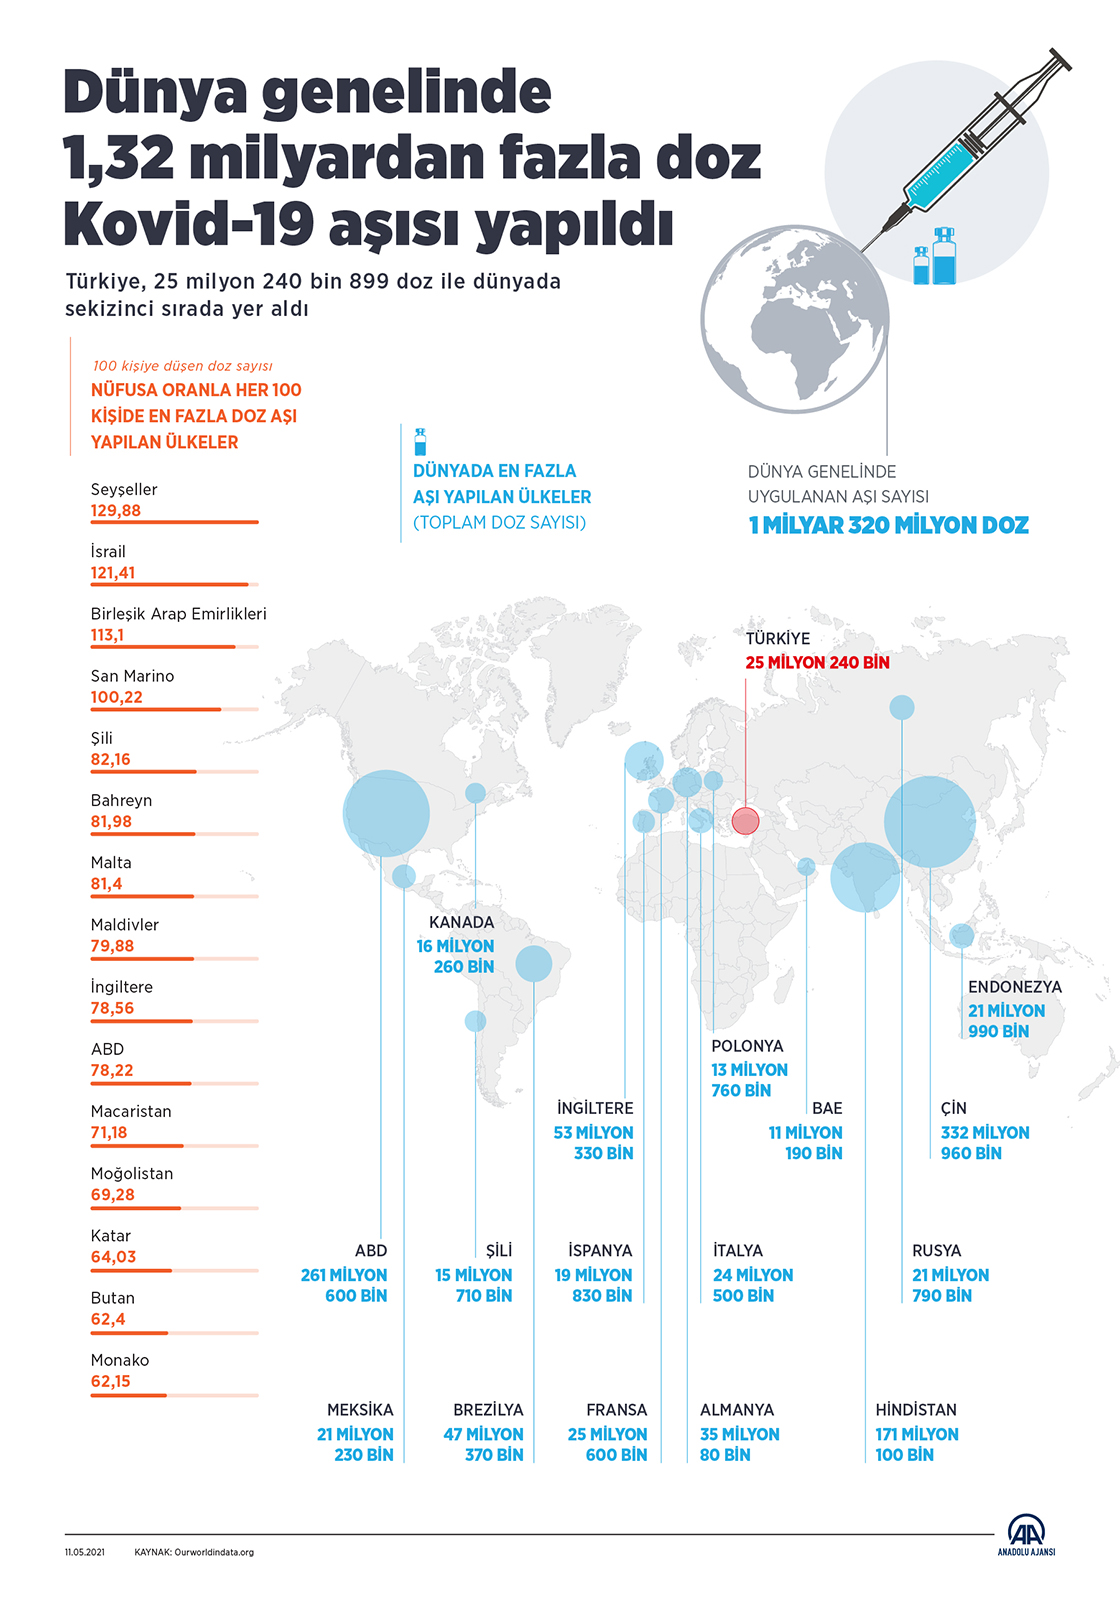 Dünya genelinde 1,32 milyardan fazla doz Kovid-19 aşısı yapıldı